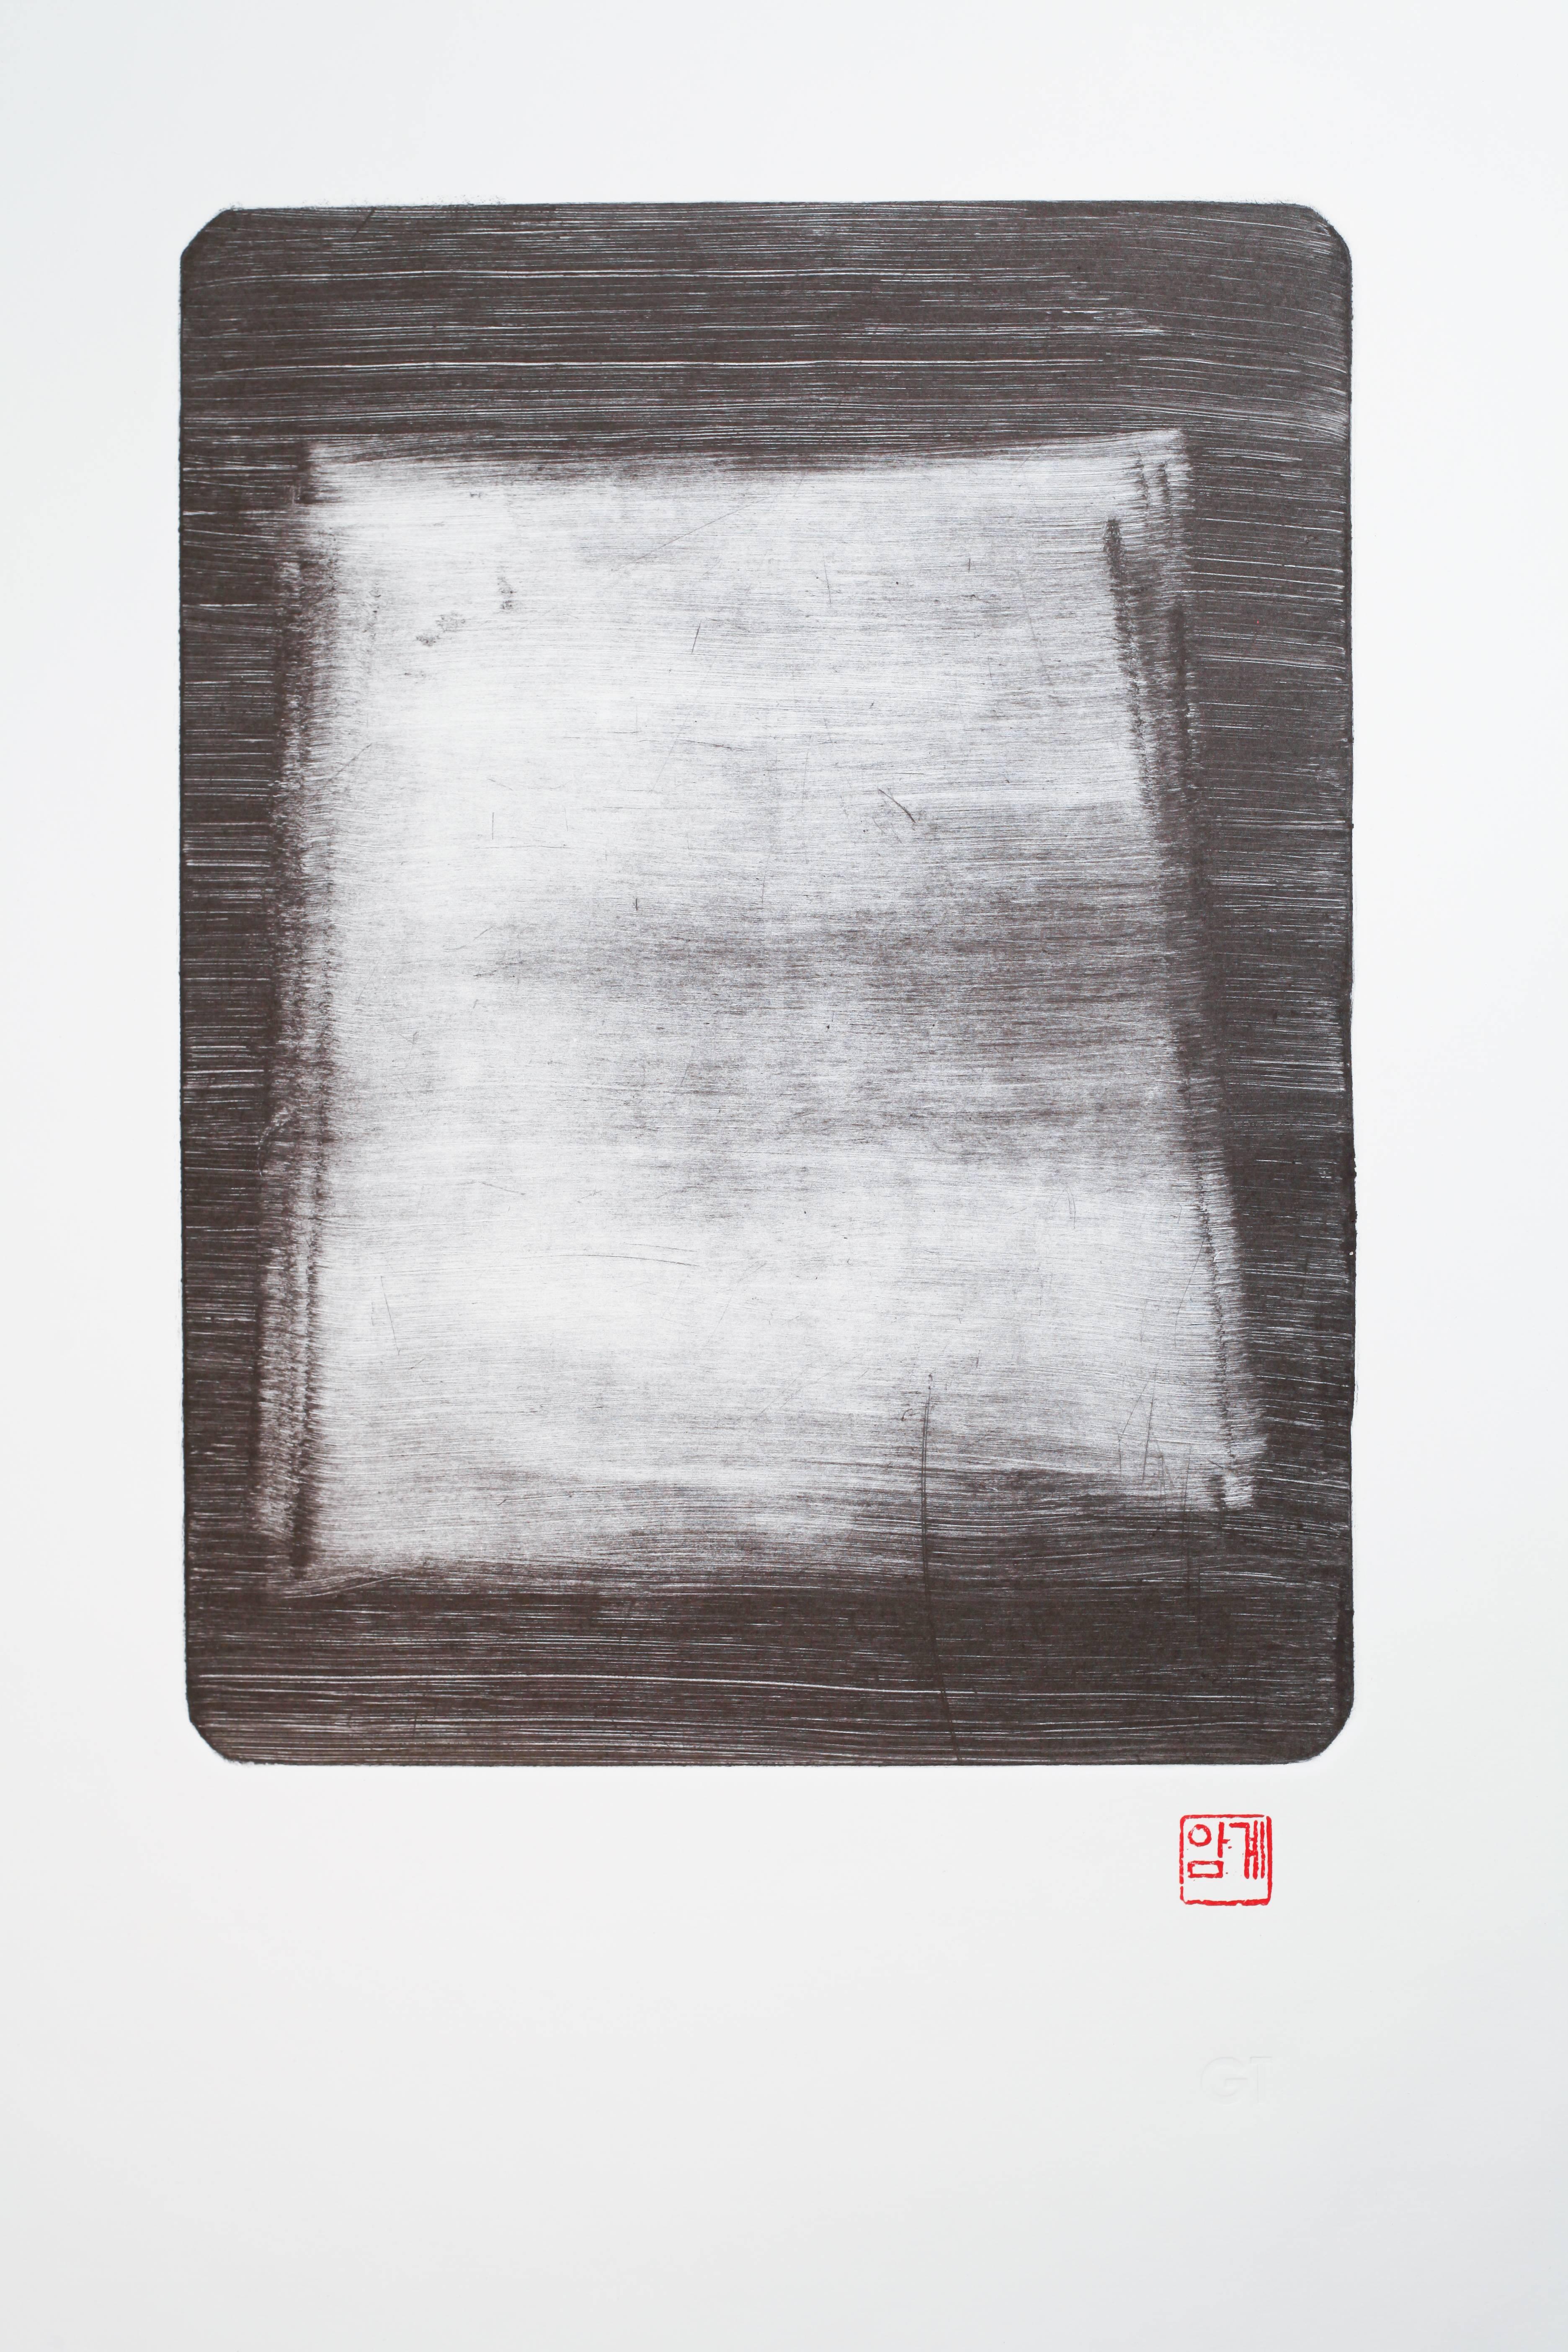 Jinny Yu Abstract Print - Notes